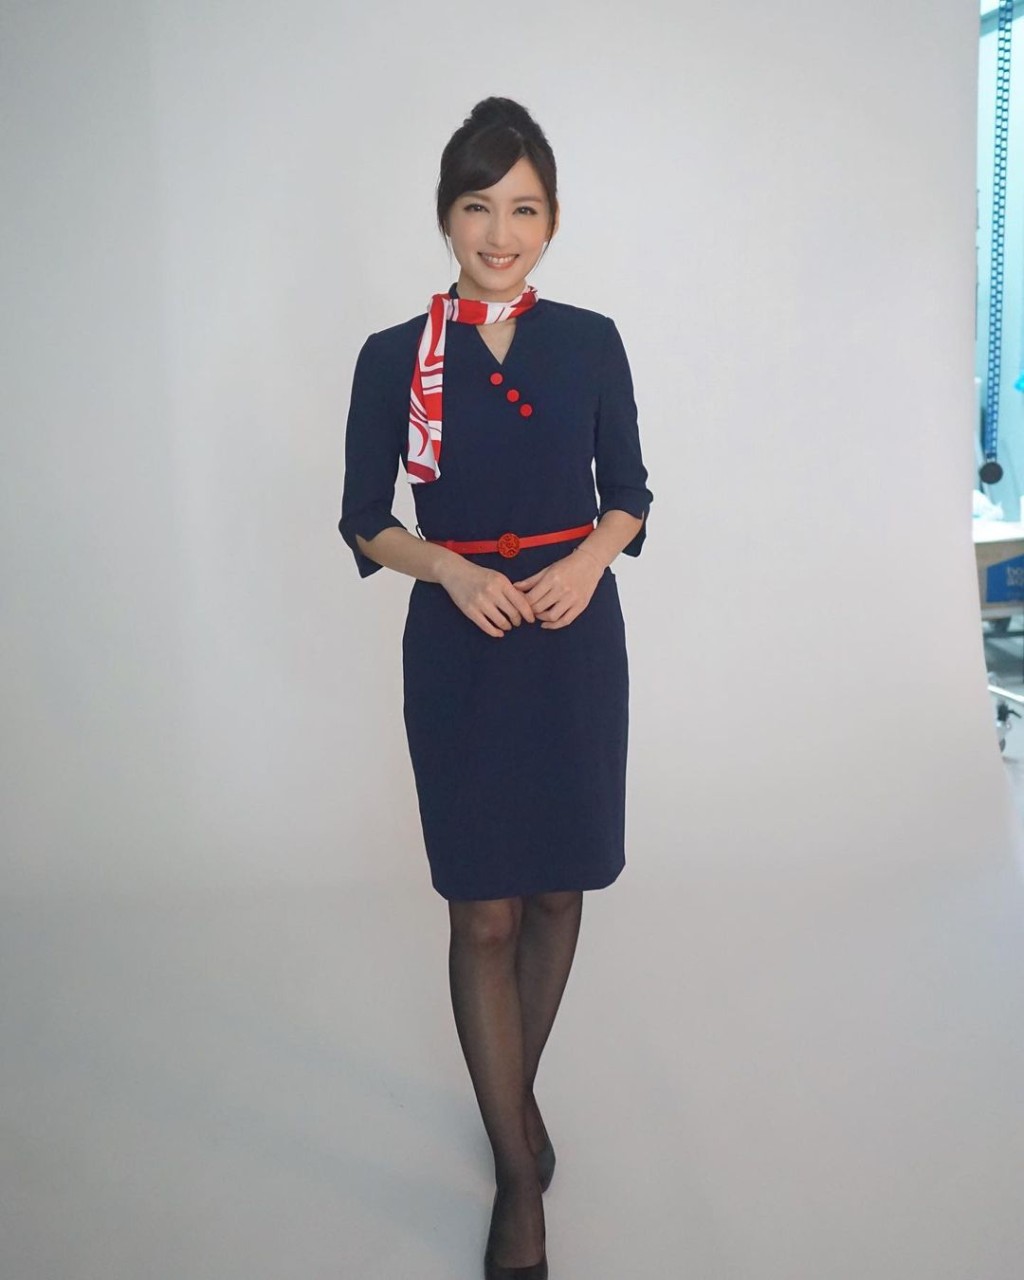 陳嘉倩貼出拍廣告扮演不同職業的照片，其中一個造型是空姐。